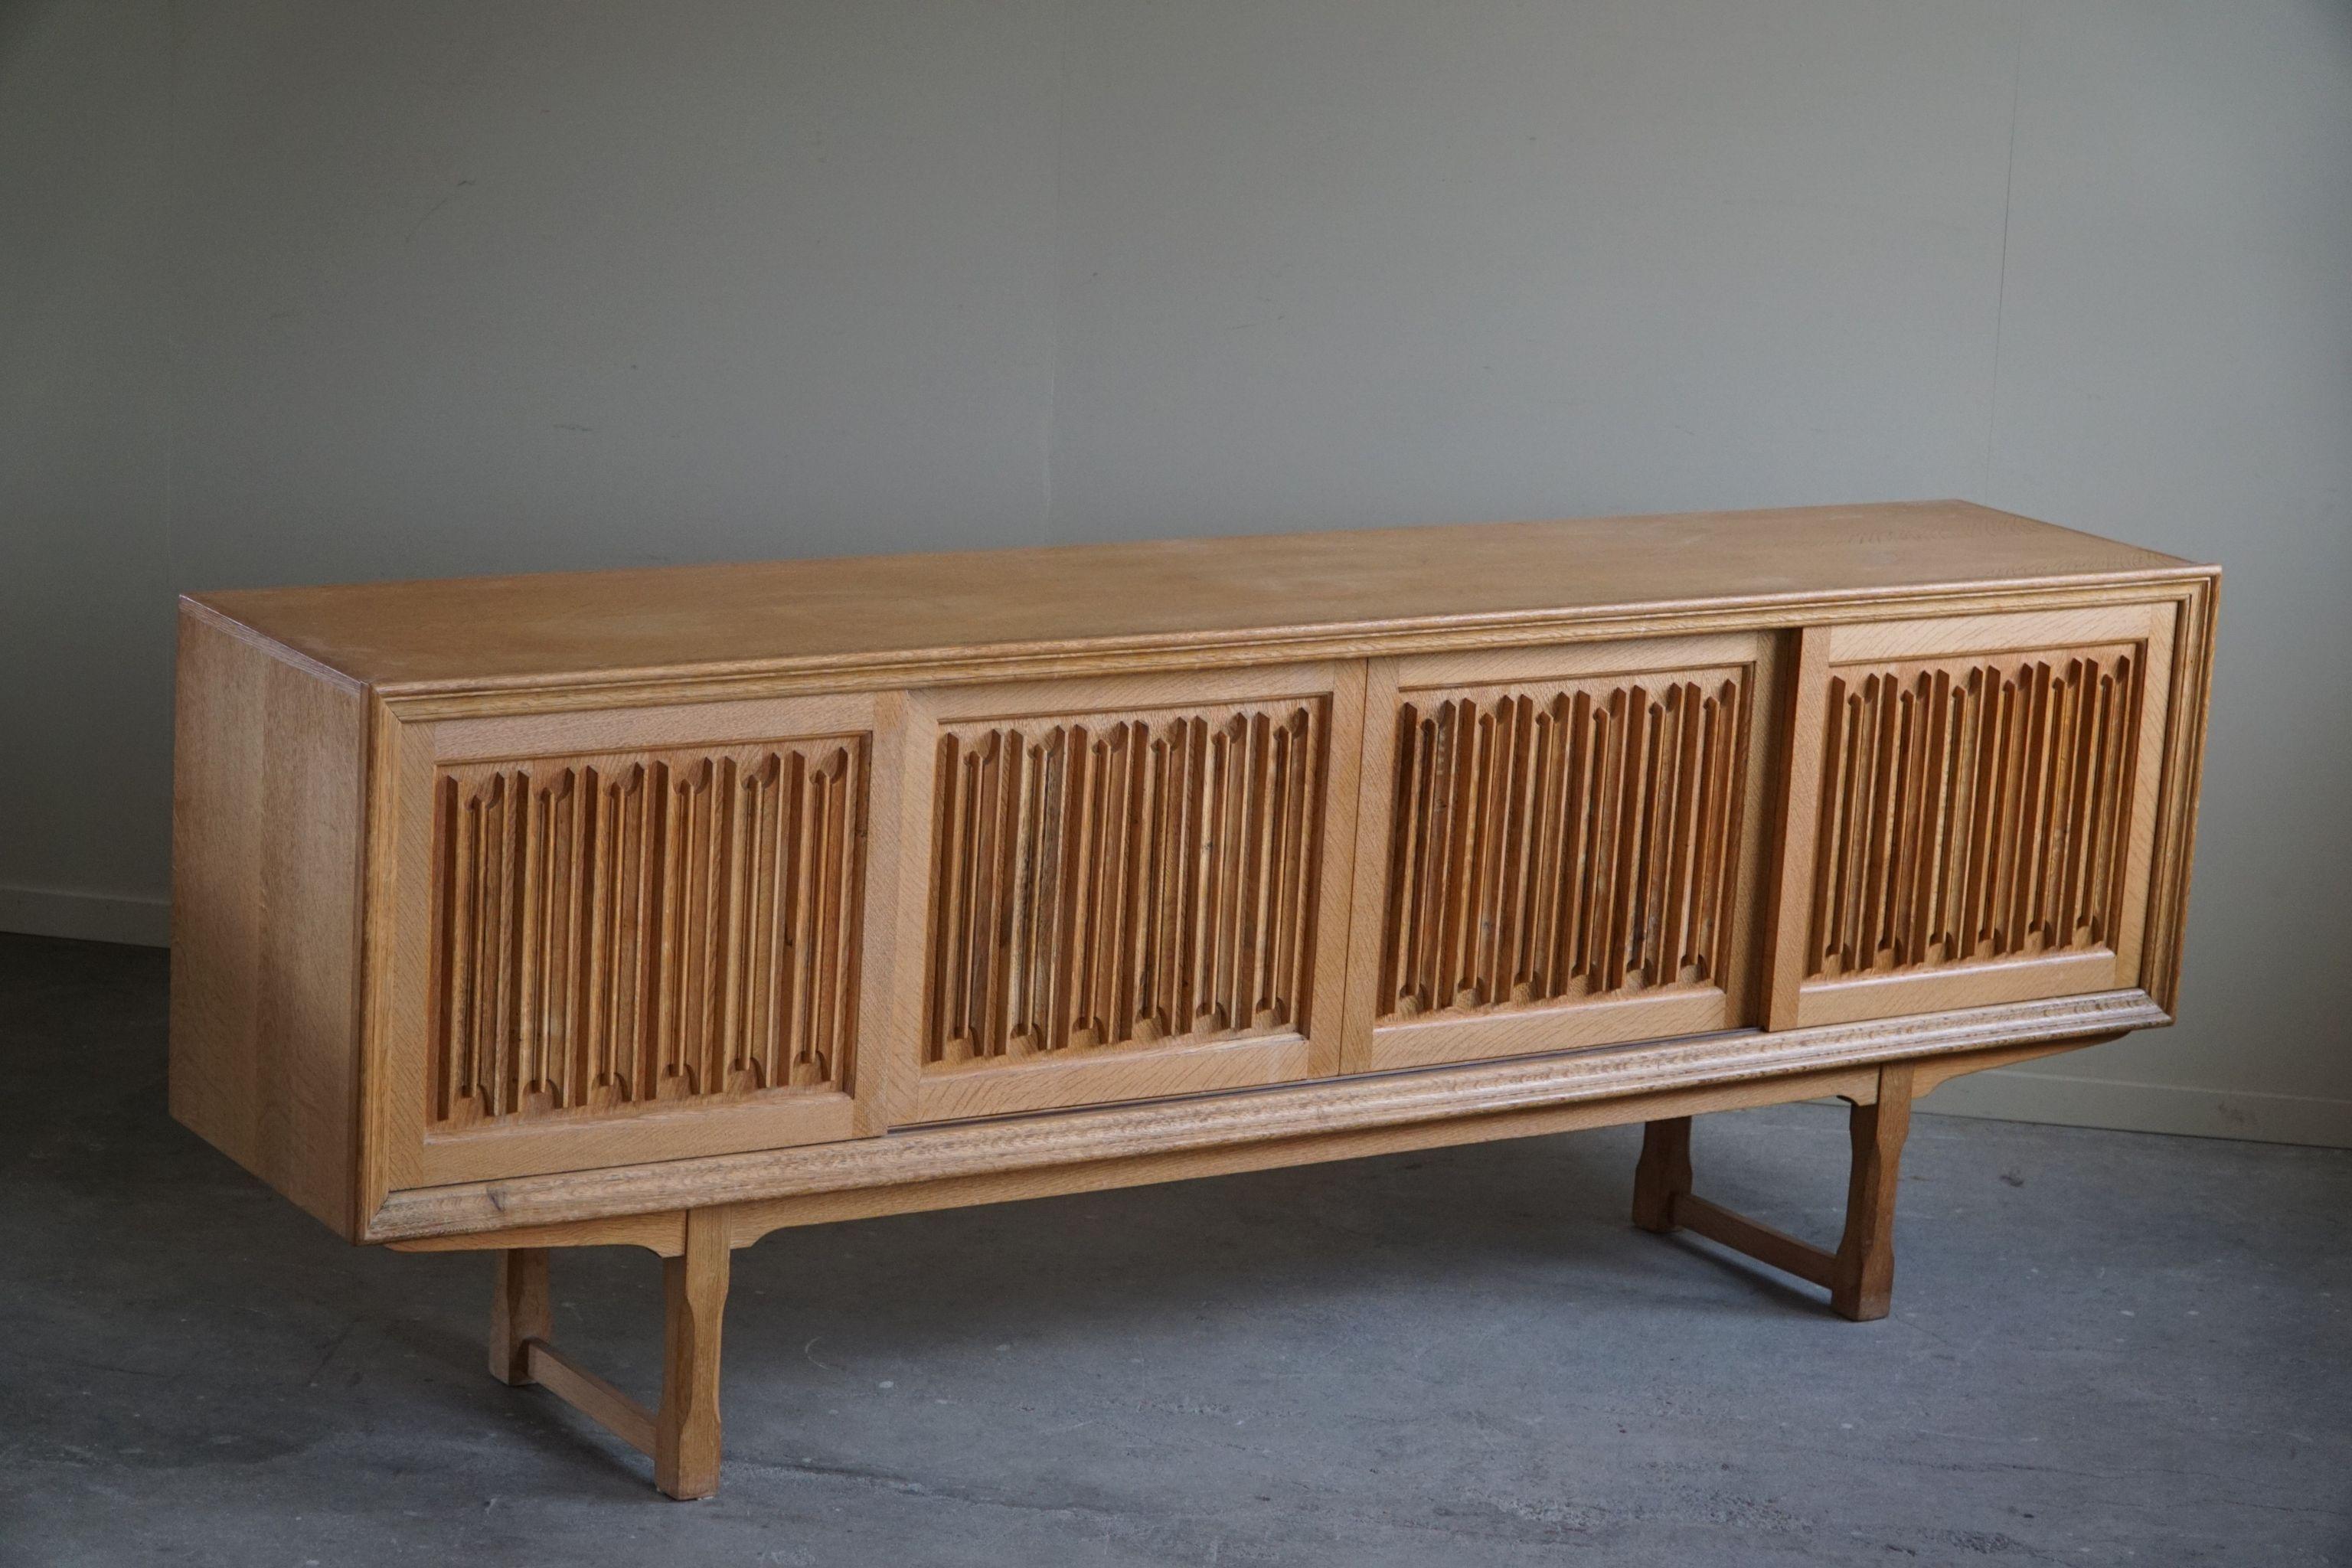 Sculptural Low Sideboard in Oak, Mid Century Modern, Danish Cabinetmaker, 1960s For Sale 12